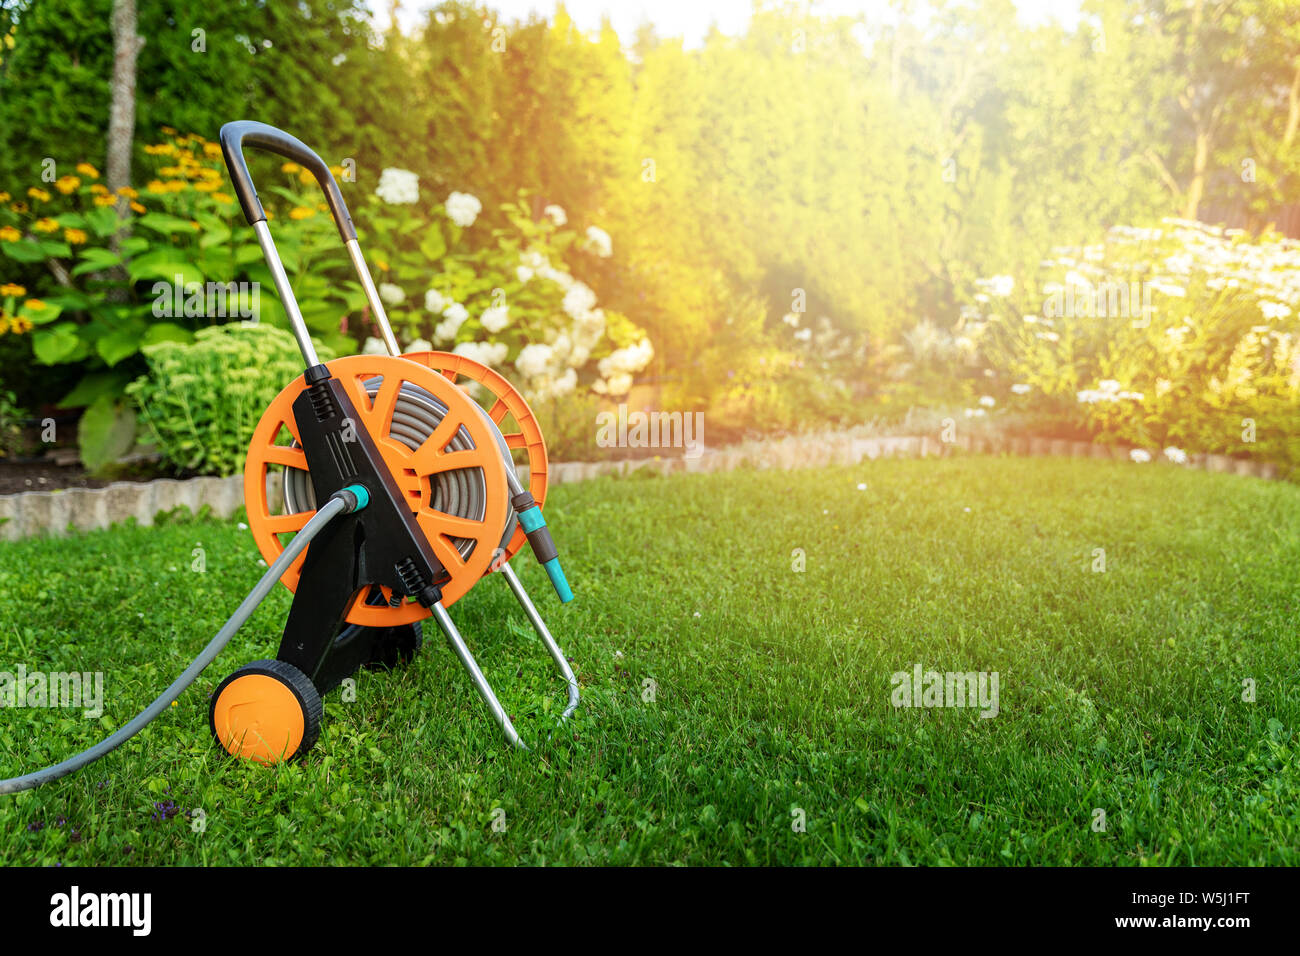 garden hose reel on green lawn in backyard copy space Stock Photo